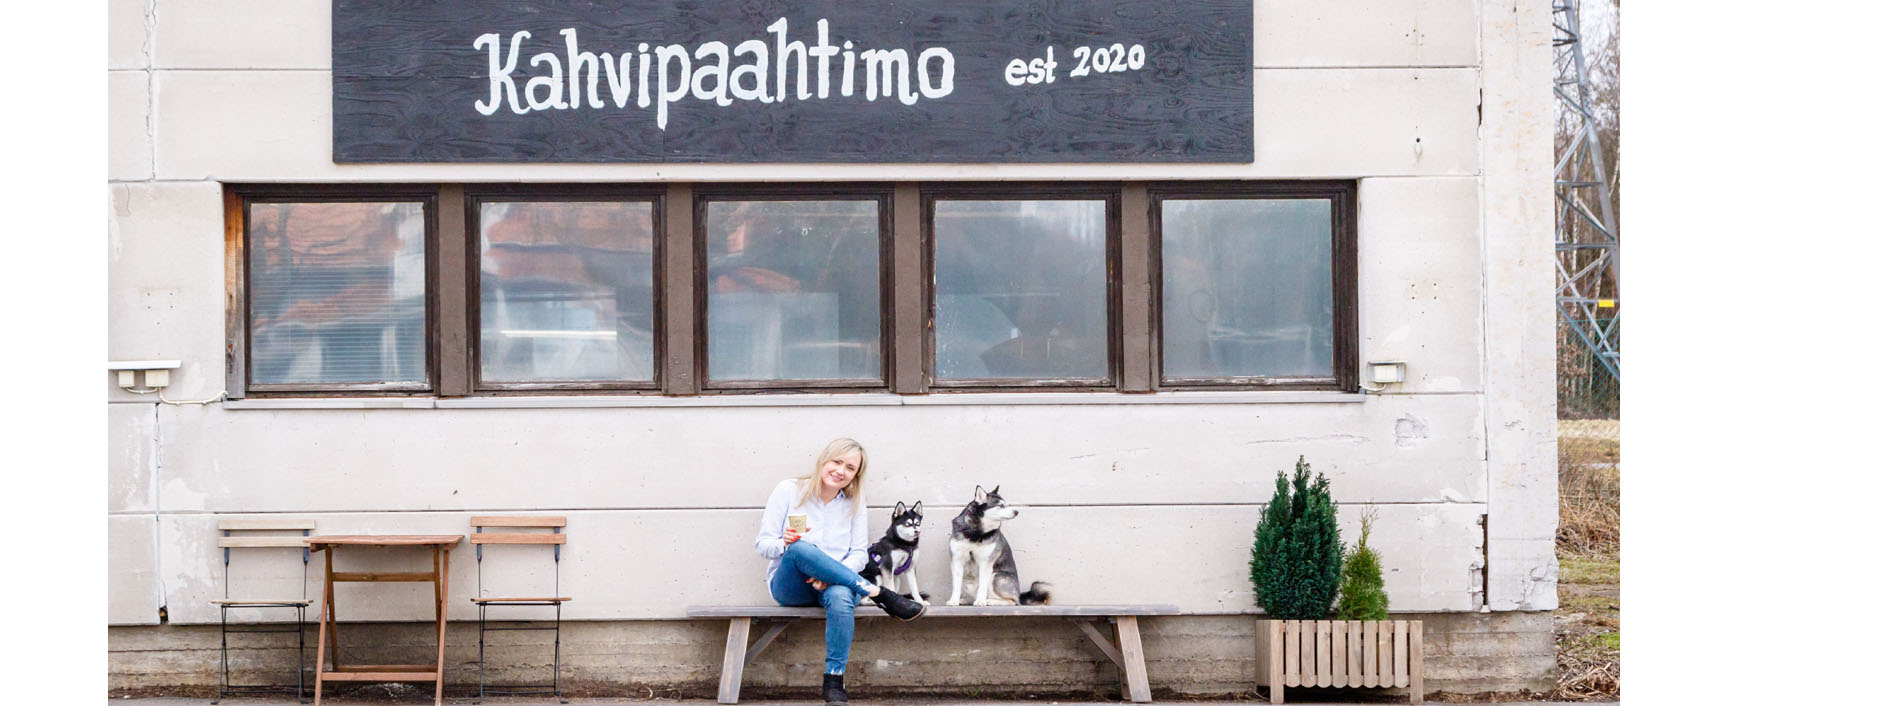 Kahvilayrittäjä Victoria Nuottanen tiesi jo 14-vuotiaana perustavansa oman kahvilan